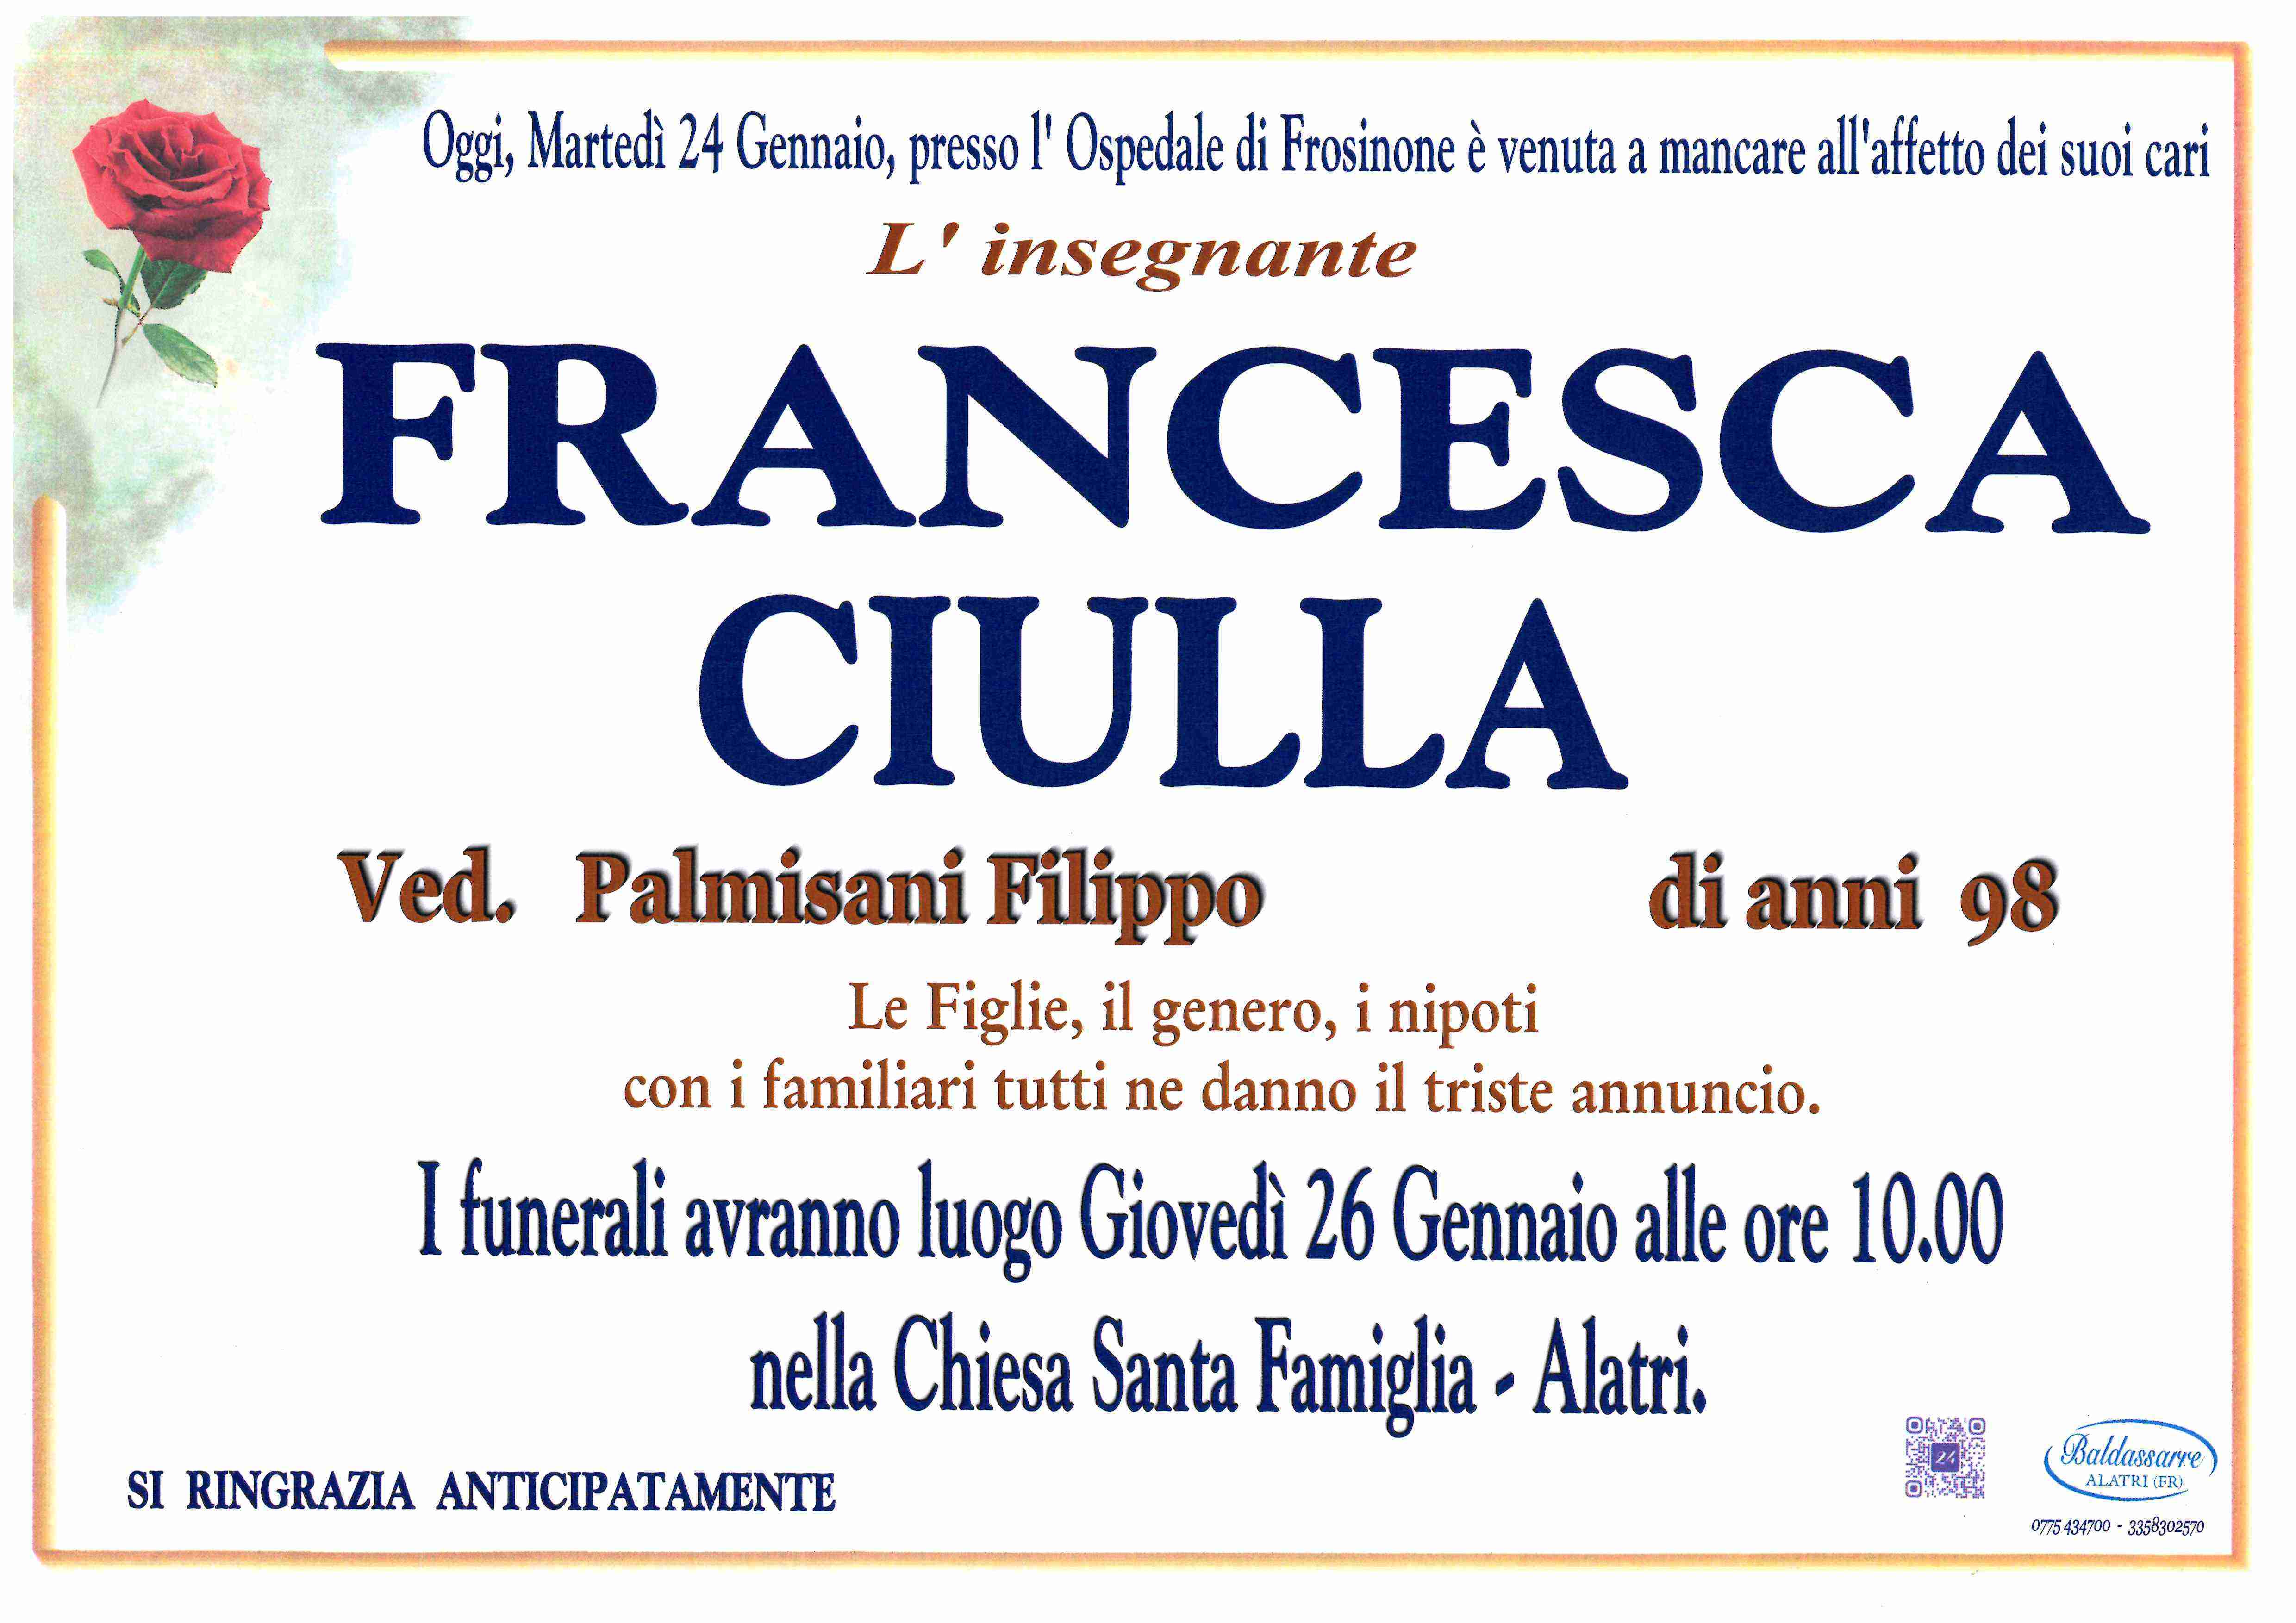 Francesca Ciulla